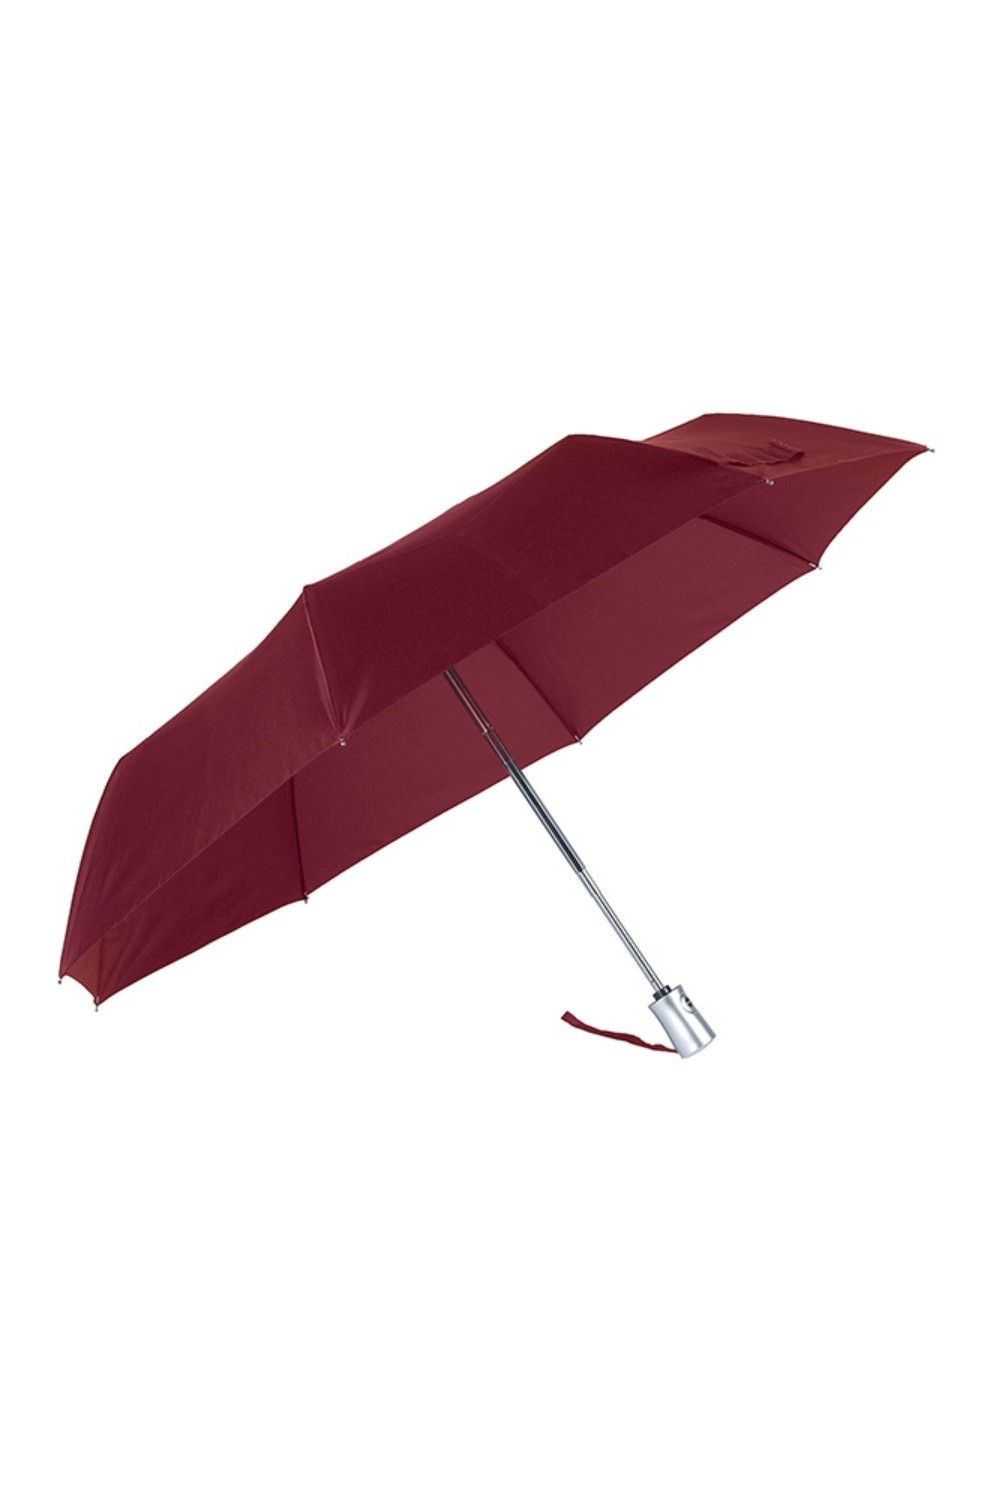 Umbrella Rain Pro Samsonite Automatic 56159